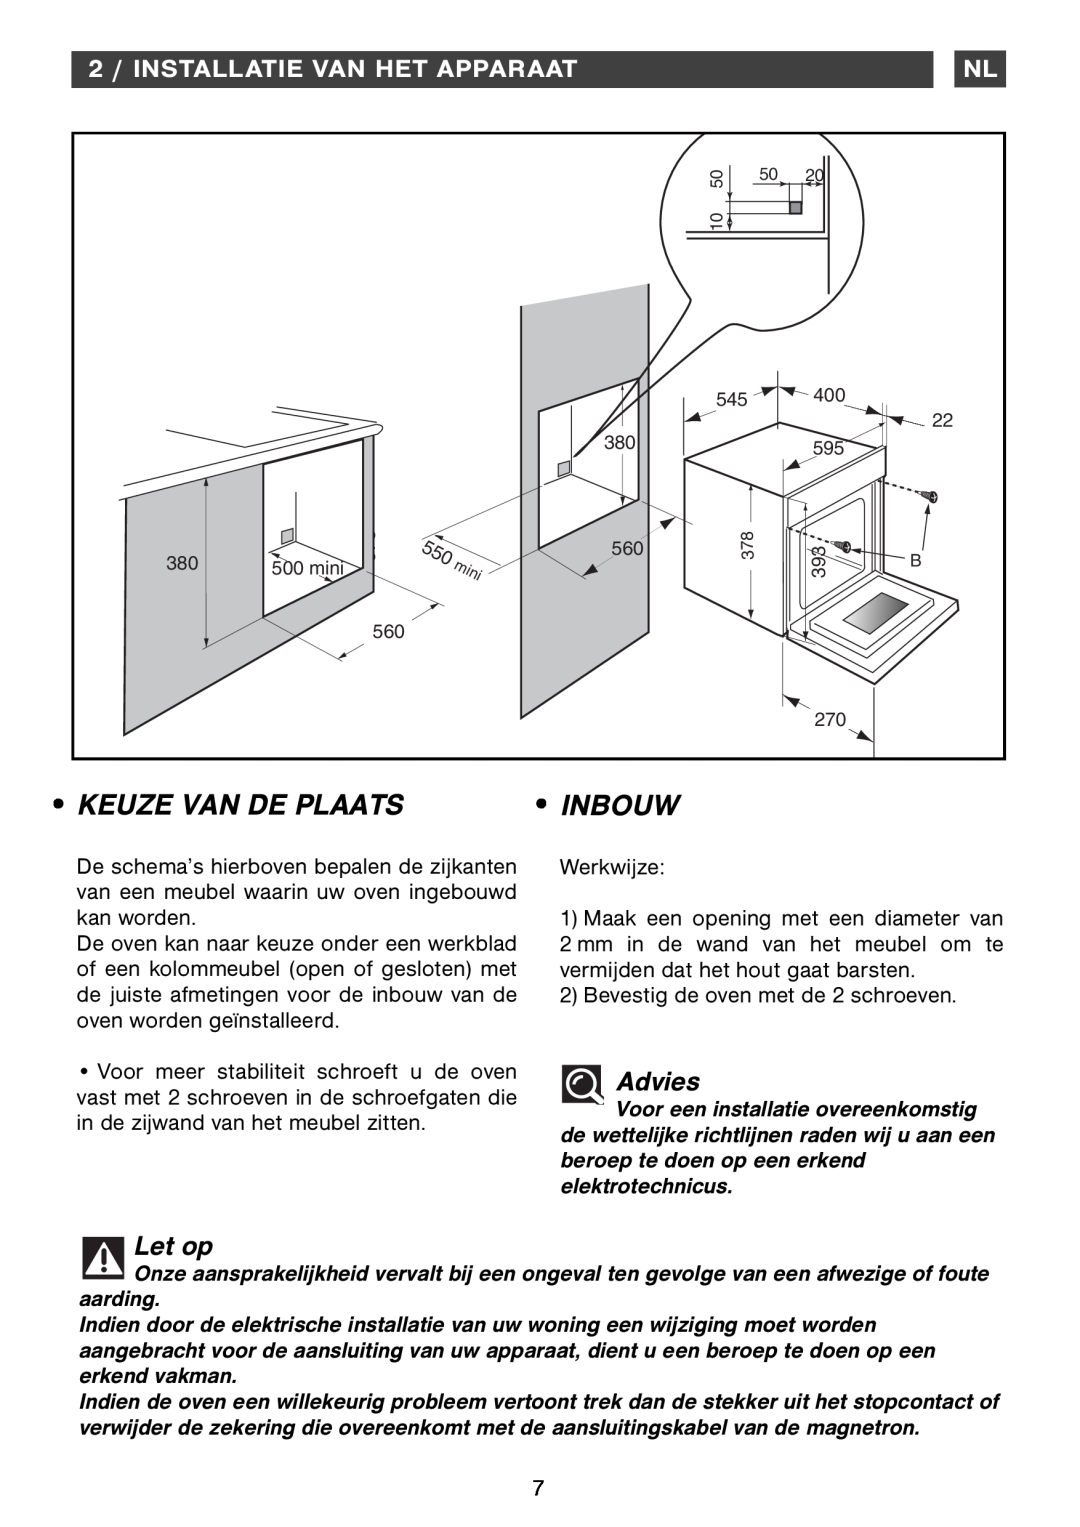 Smeg Four Oven manual Advies, 2 / INSTALLATIE VAN HET APPARAAT, Inbouw, Keuze Van De Plaats, Let op 